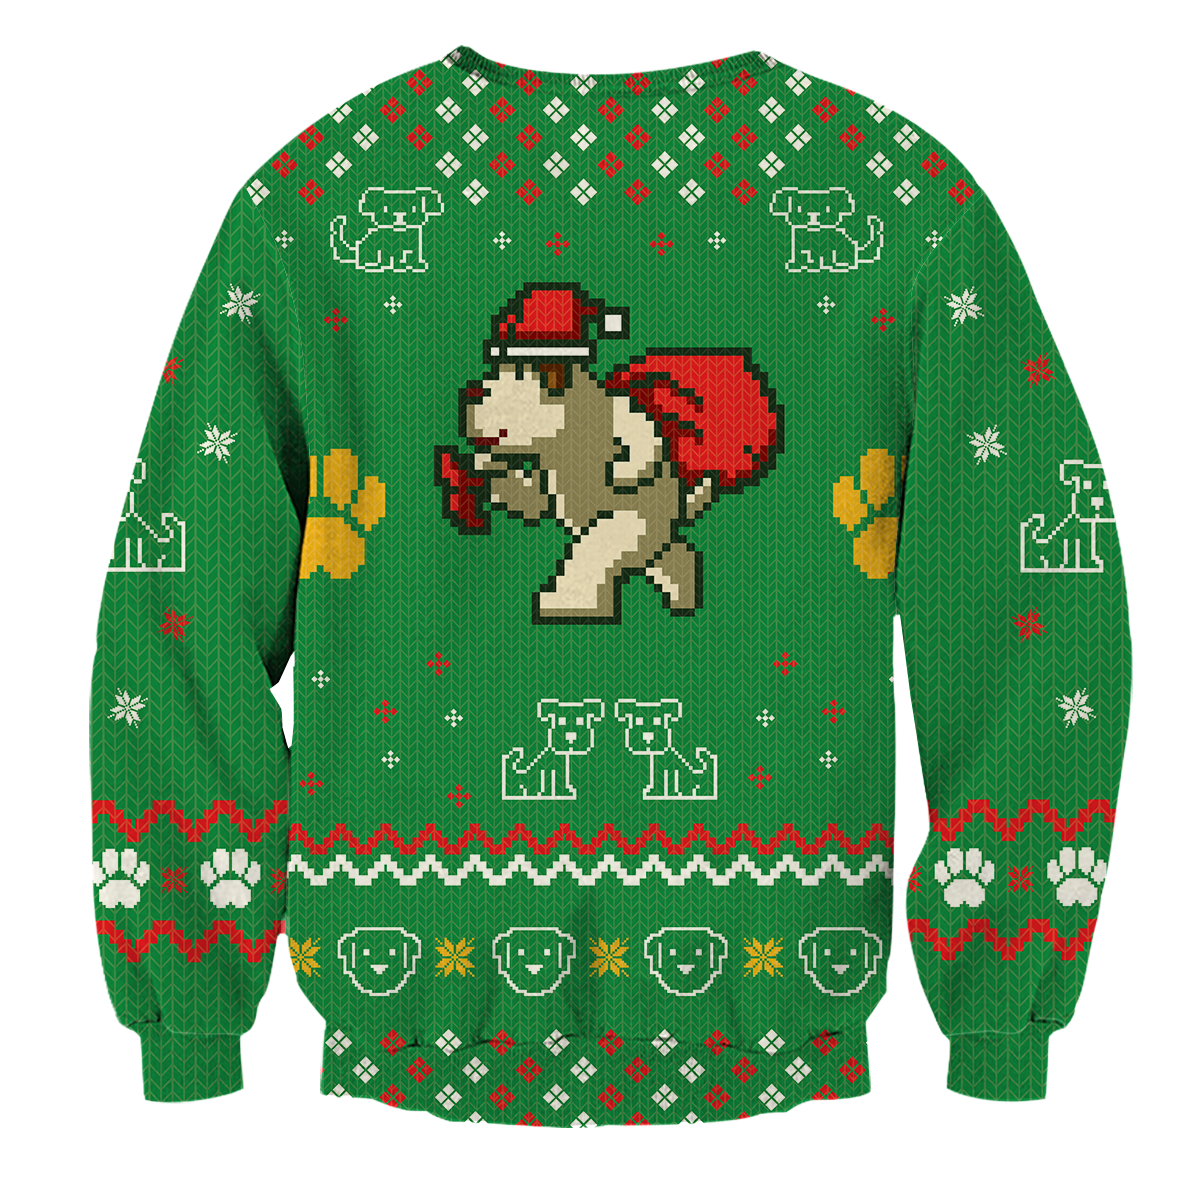 Dog And Wine Christmas Unisex Sweater